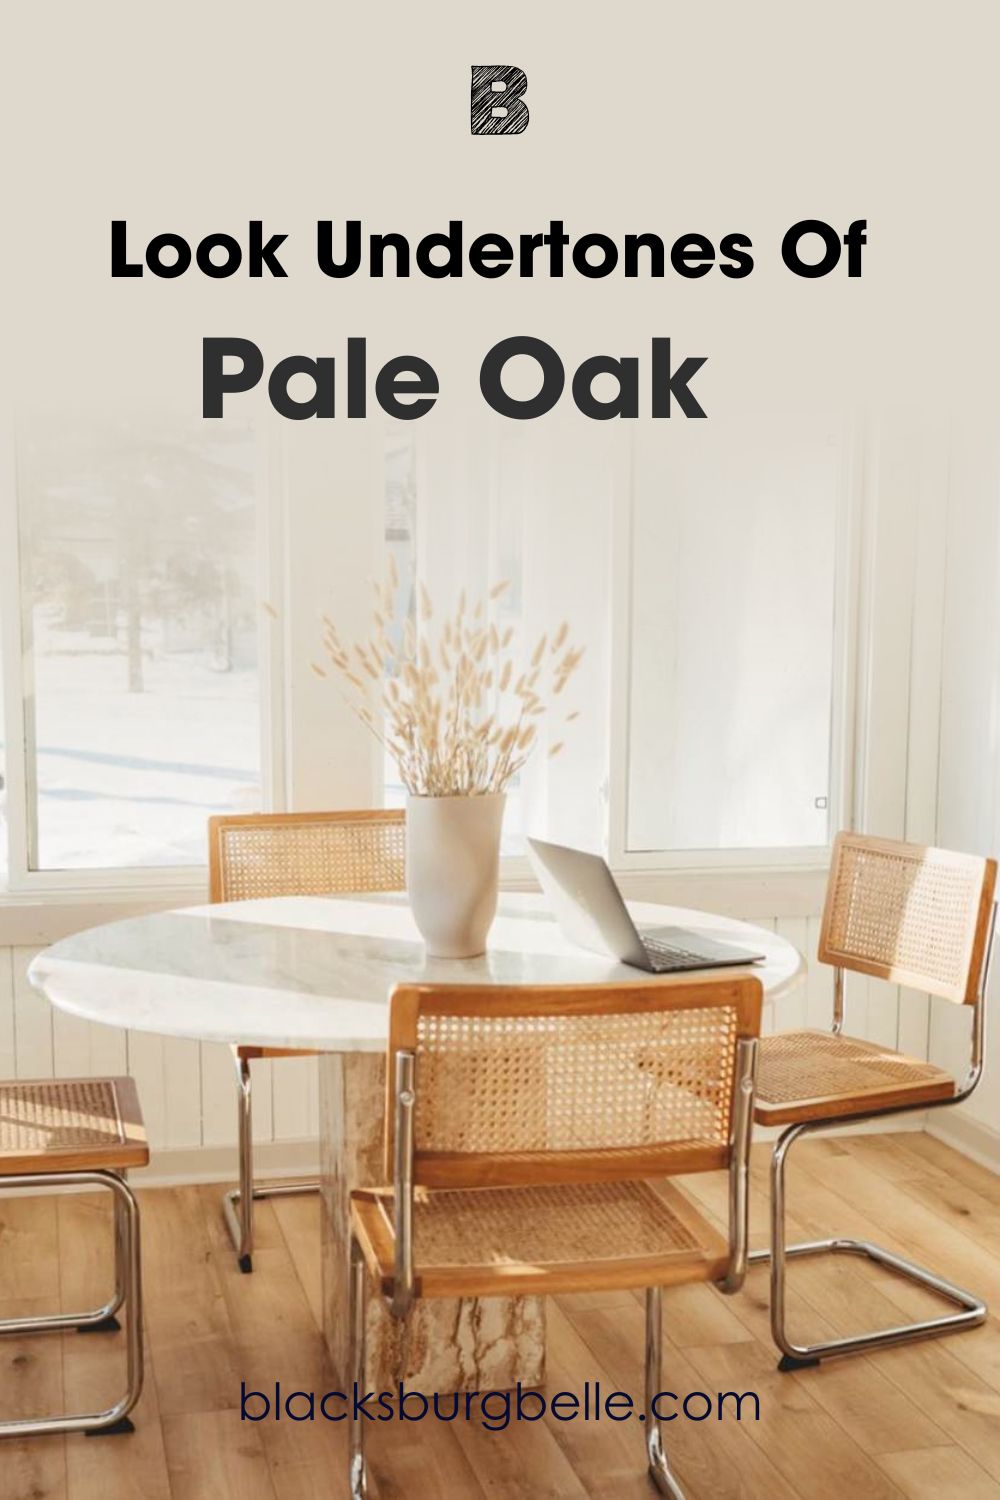 A Closer Look at Pale Oak’s Undertone